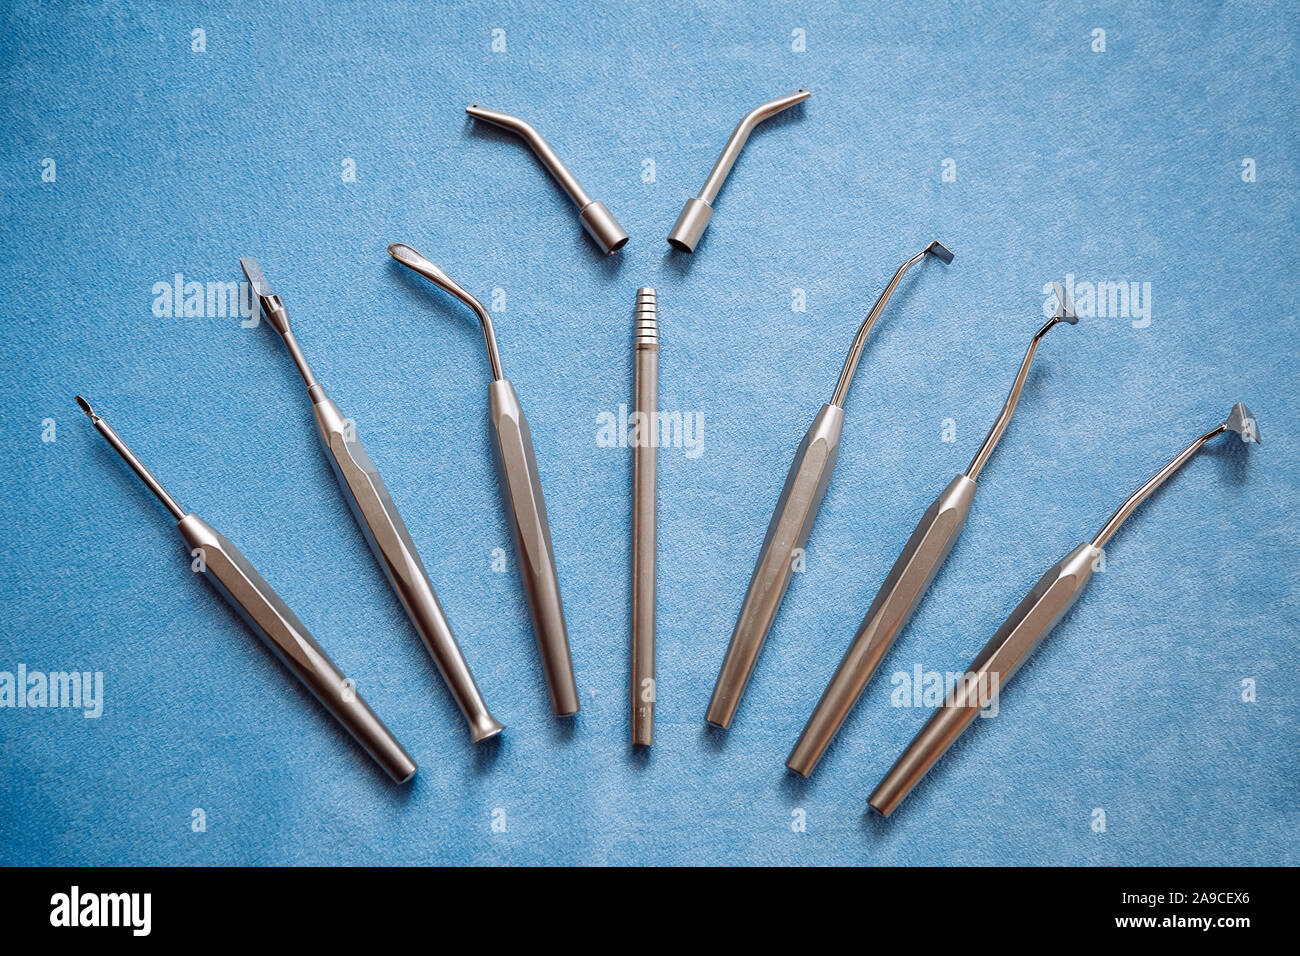 Strumenti professionali per stomatologia e chirurgia maxillo-facciale sono meravigliosamente disposto sul tavolo nella forma di una ventola. Foto Stock